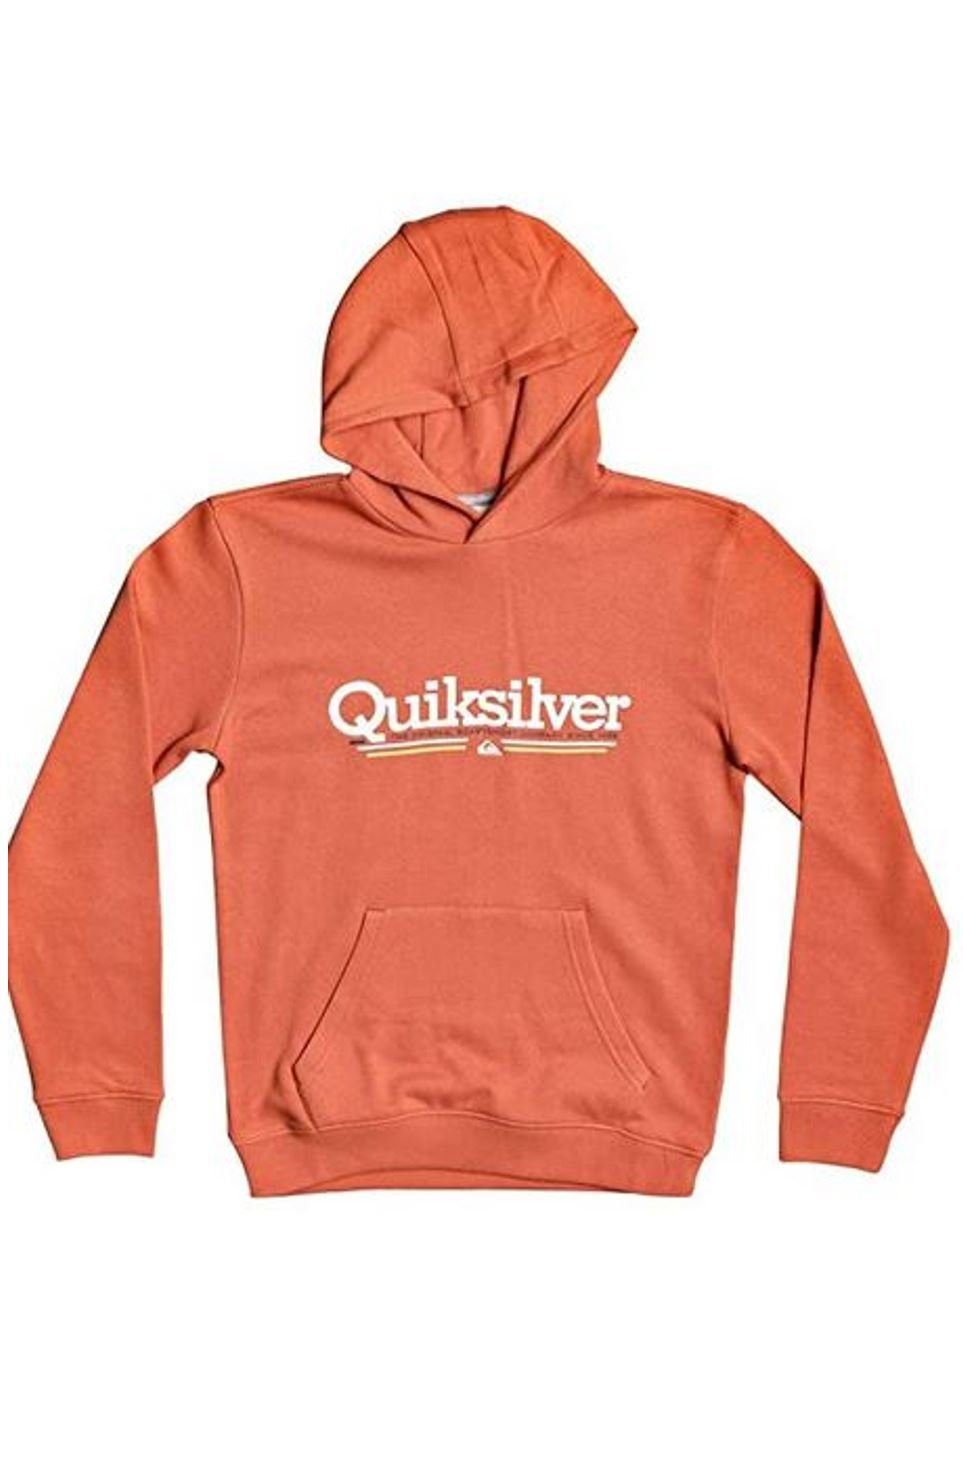 Quiksilver Sweatshirt